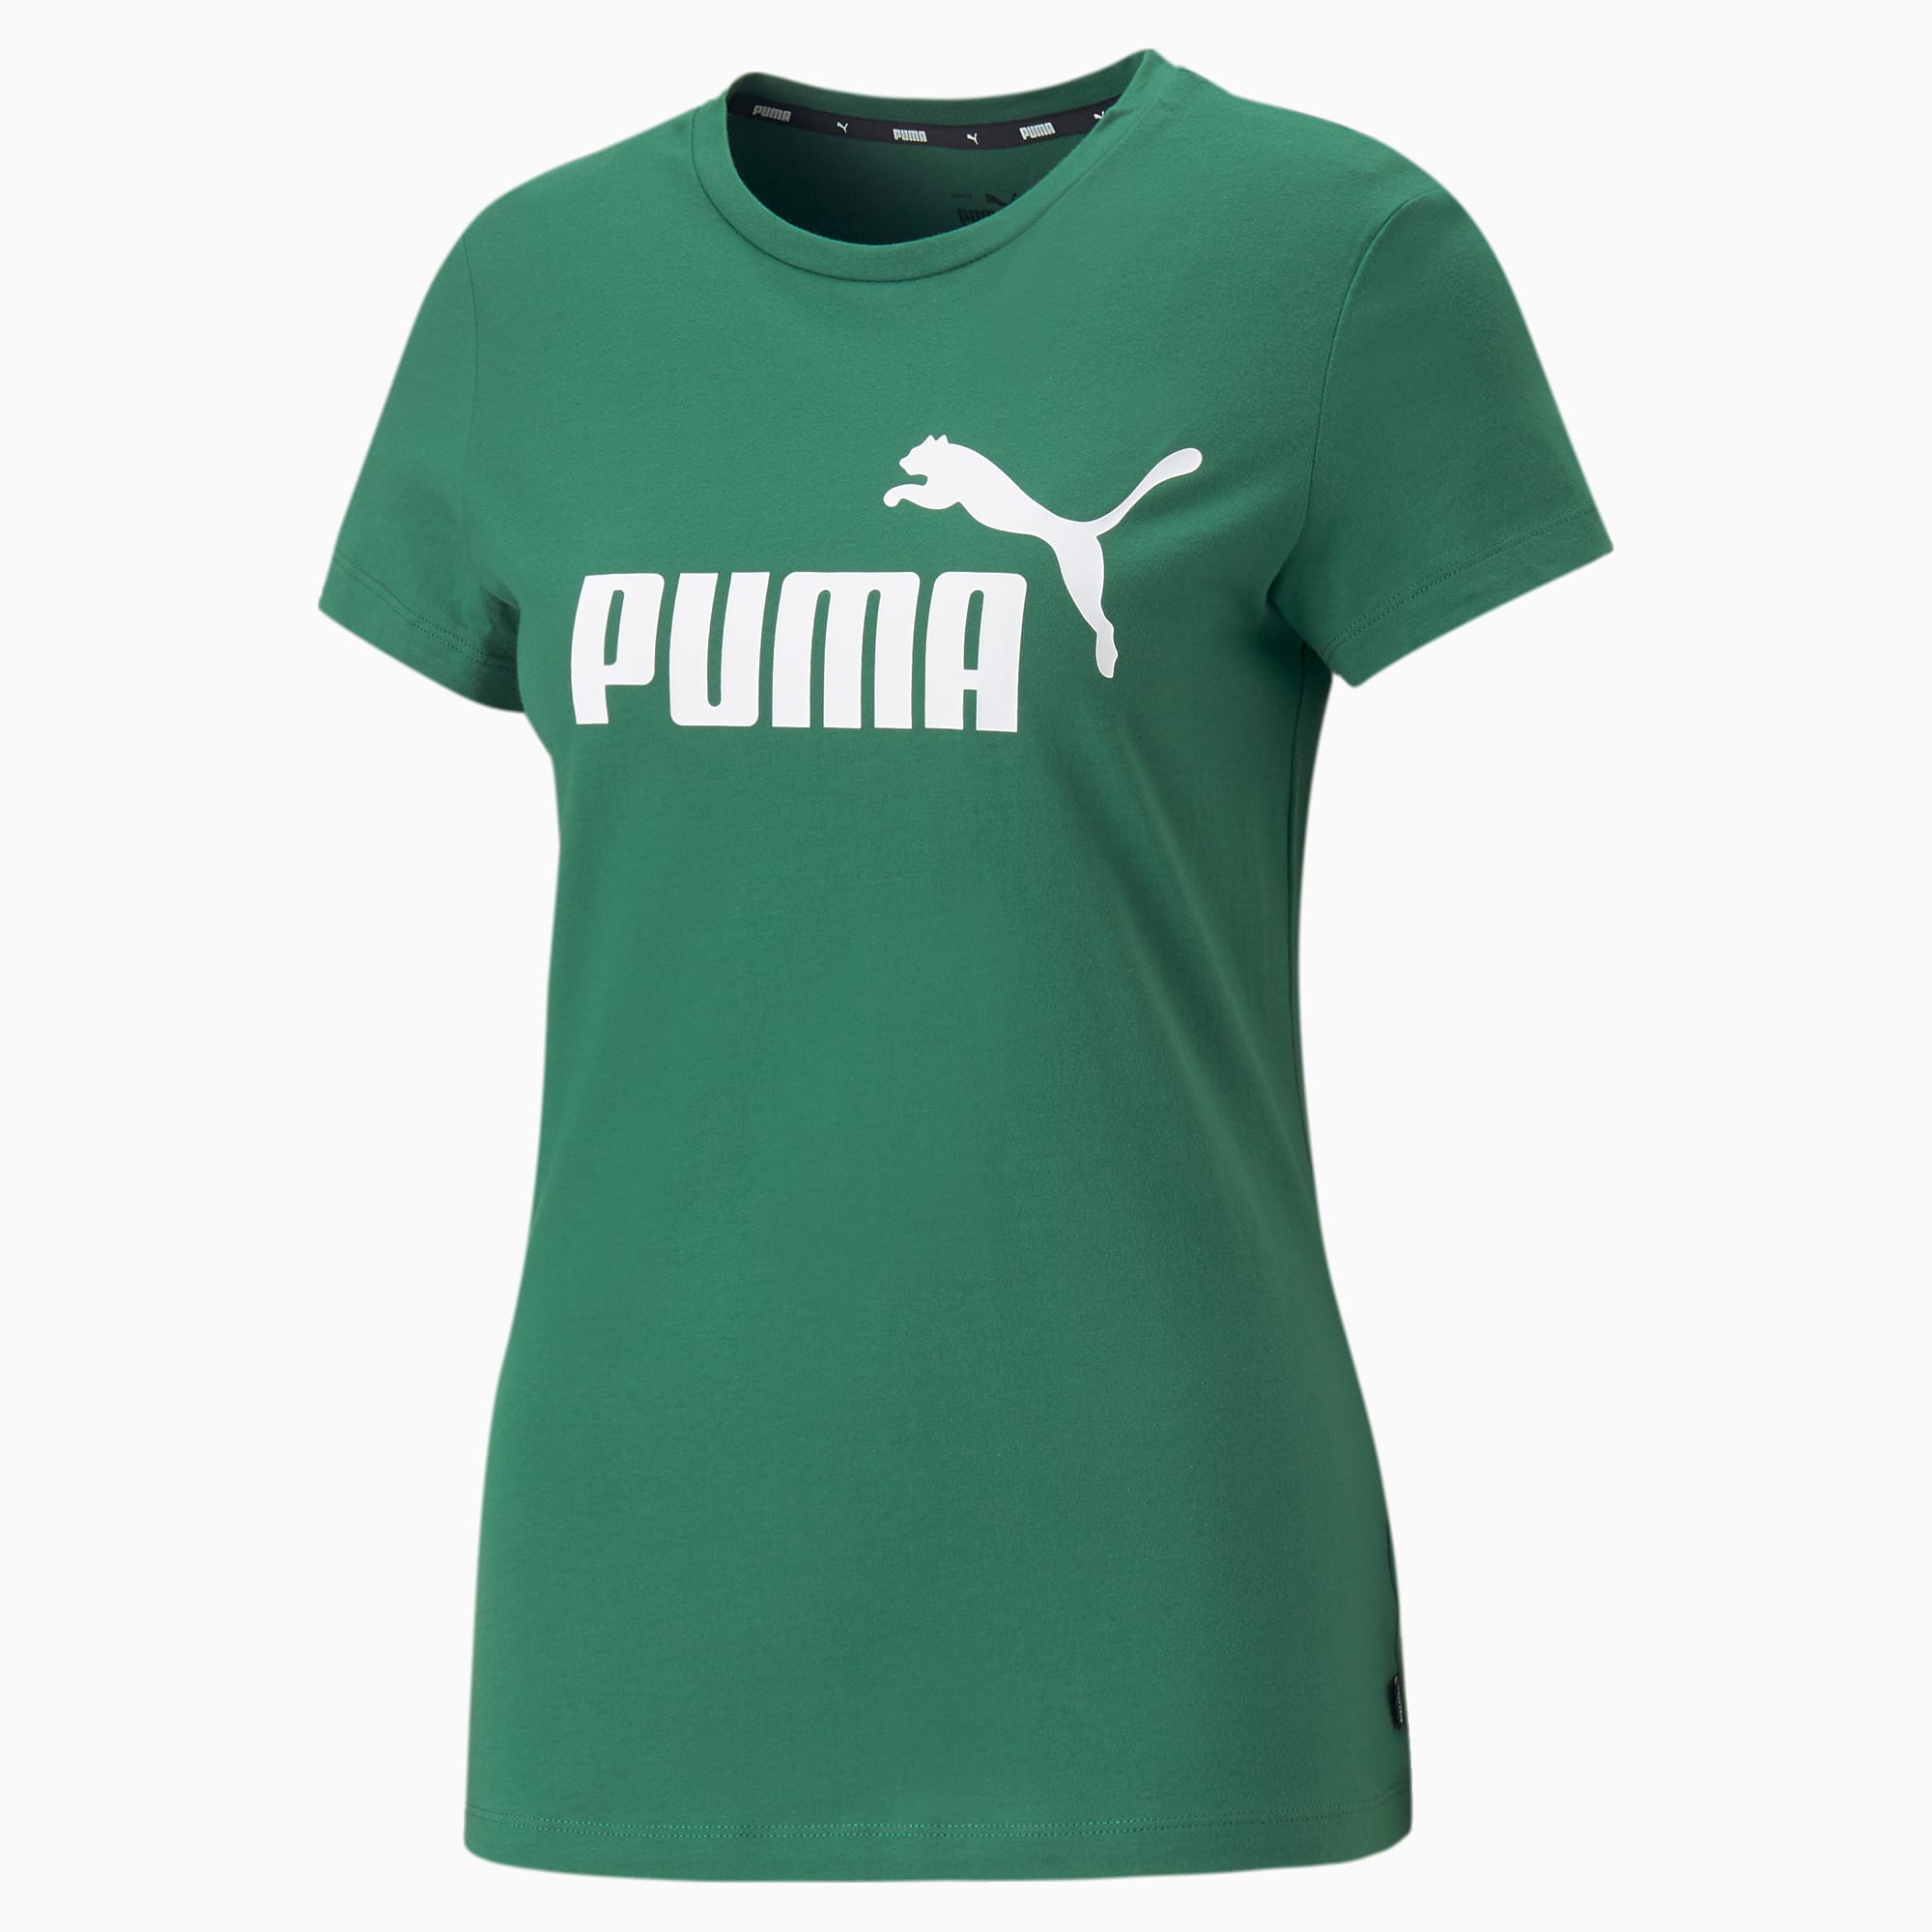 Camisetas Puma para Mujer - Tienda Esdemarca calzado, moda y